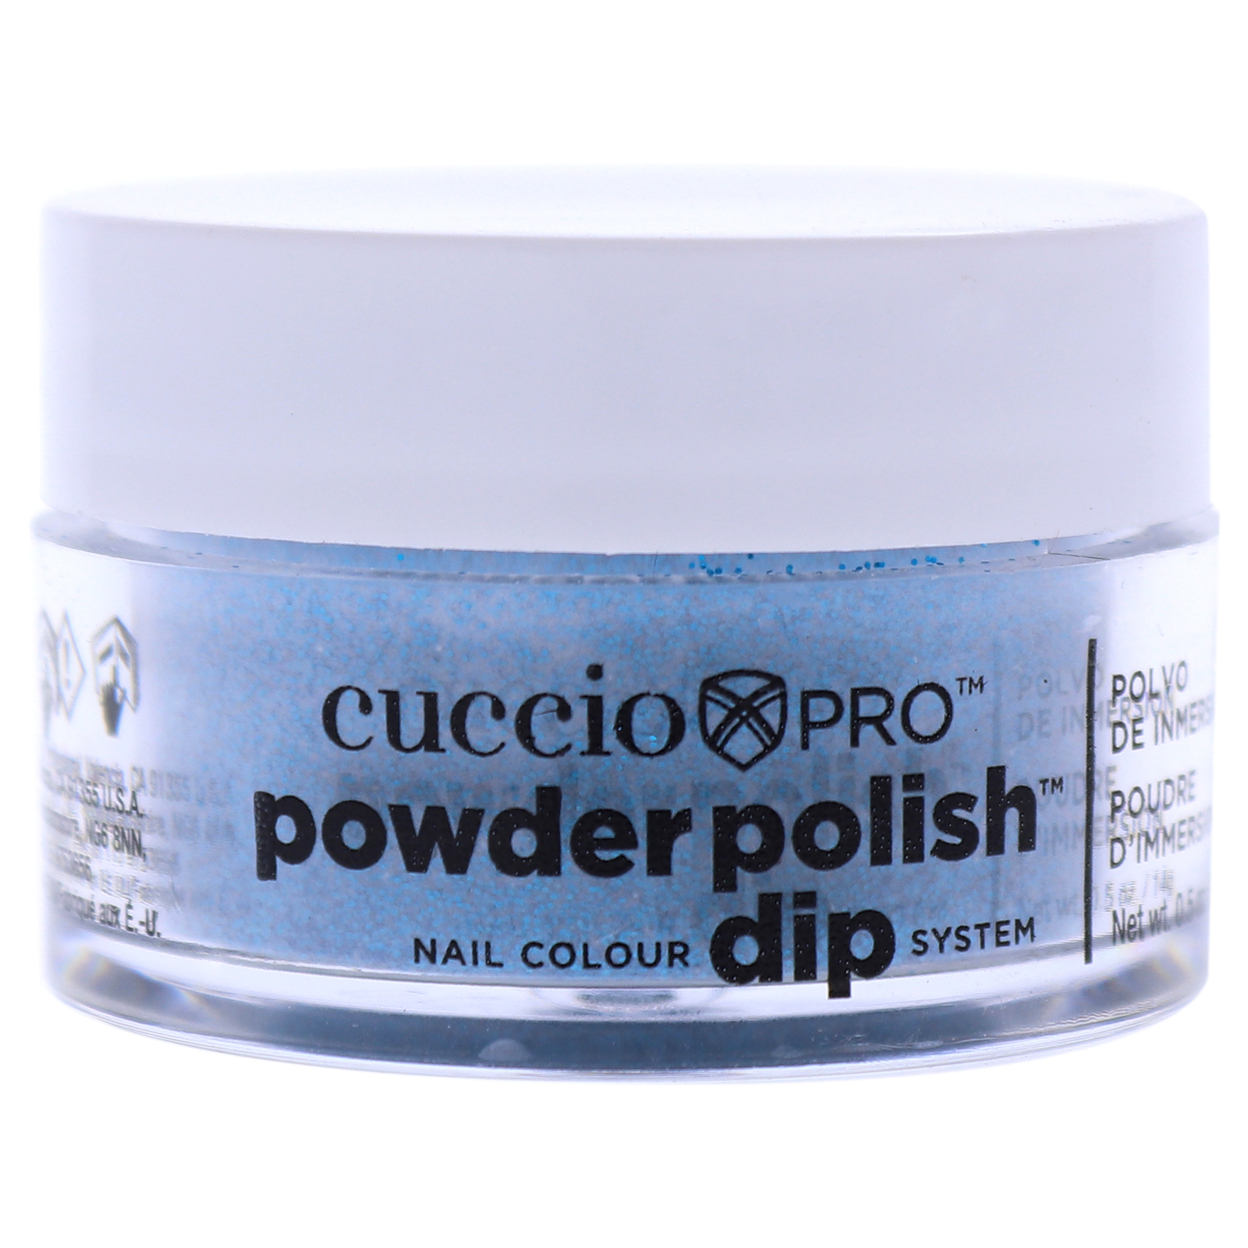 Cuccio Colour Pro Powder Polish Nail Colour Dip System - Deep Blue Glitter Nail Powder 0.5 Oz